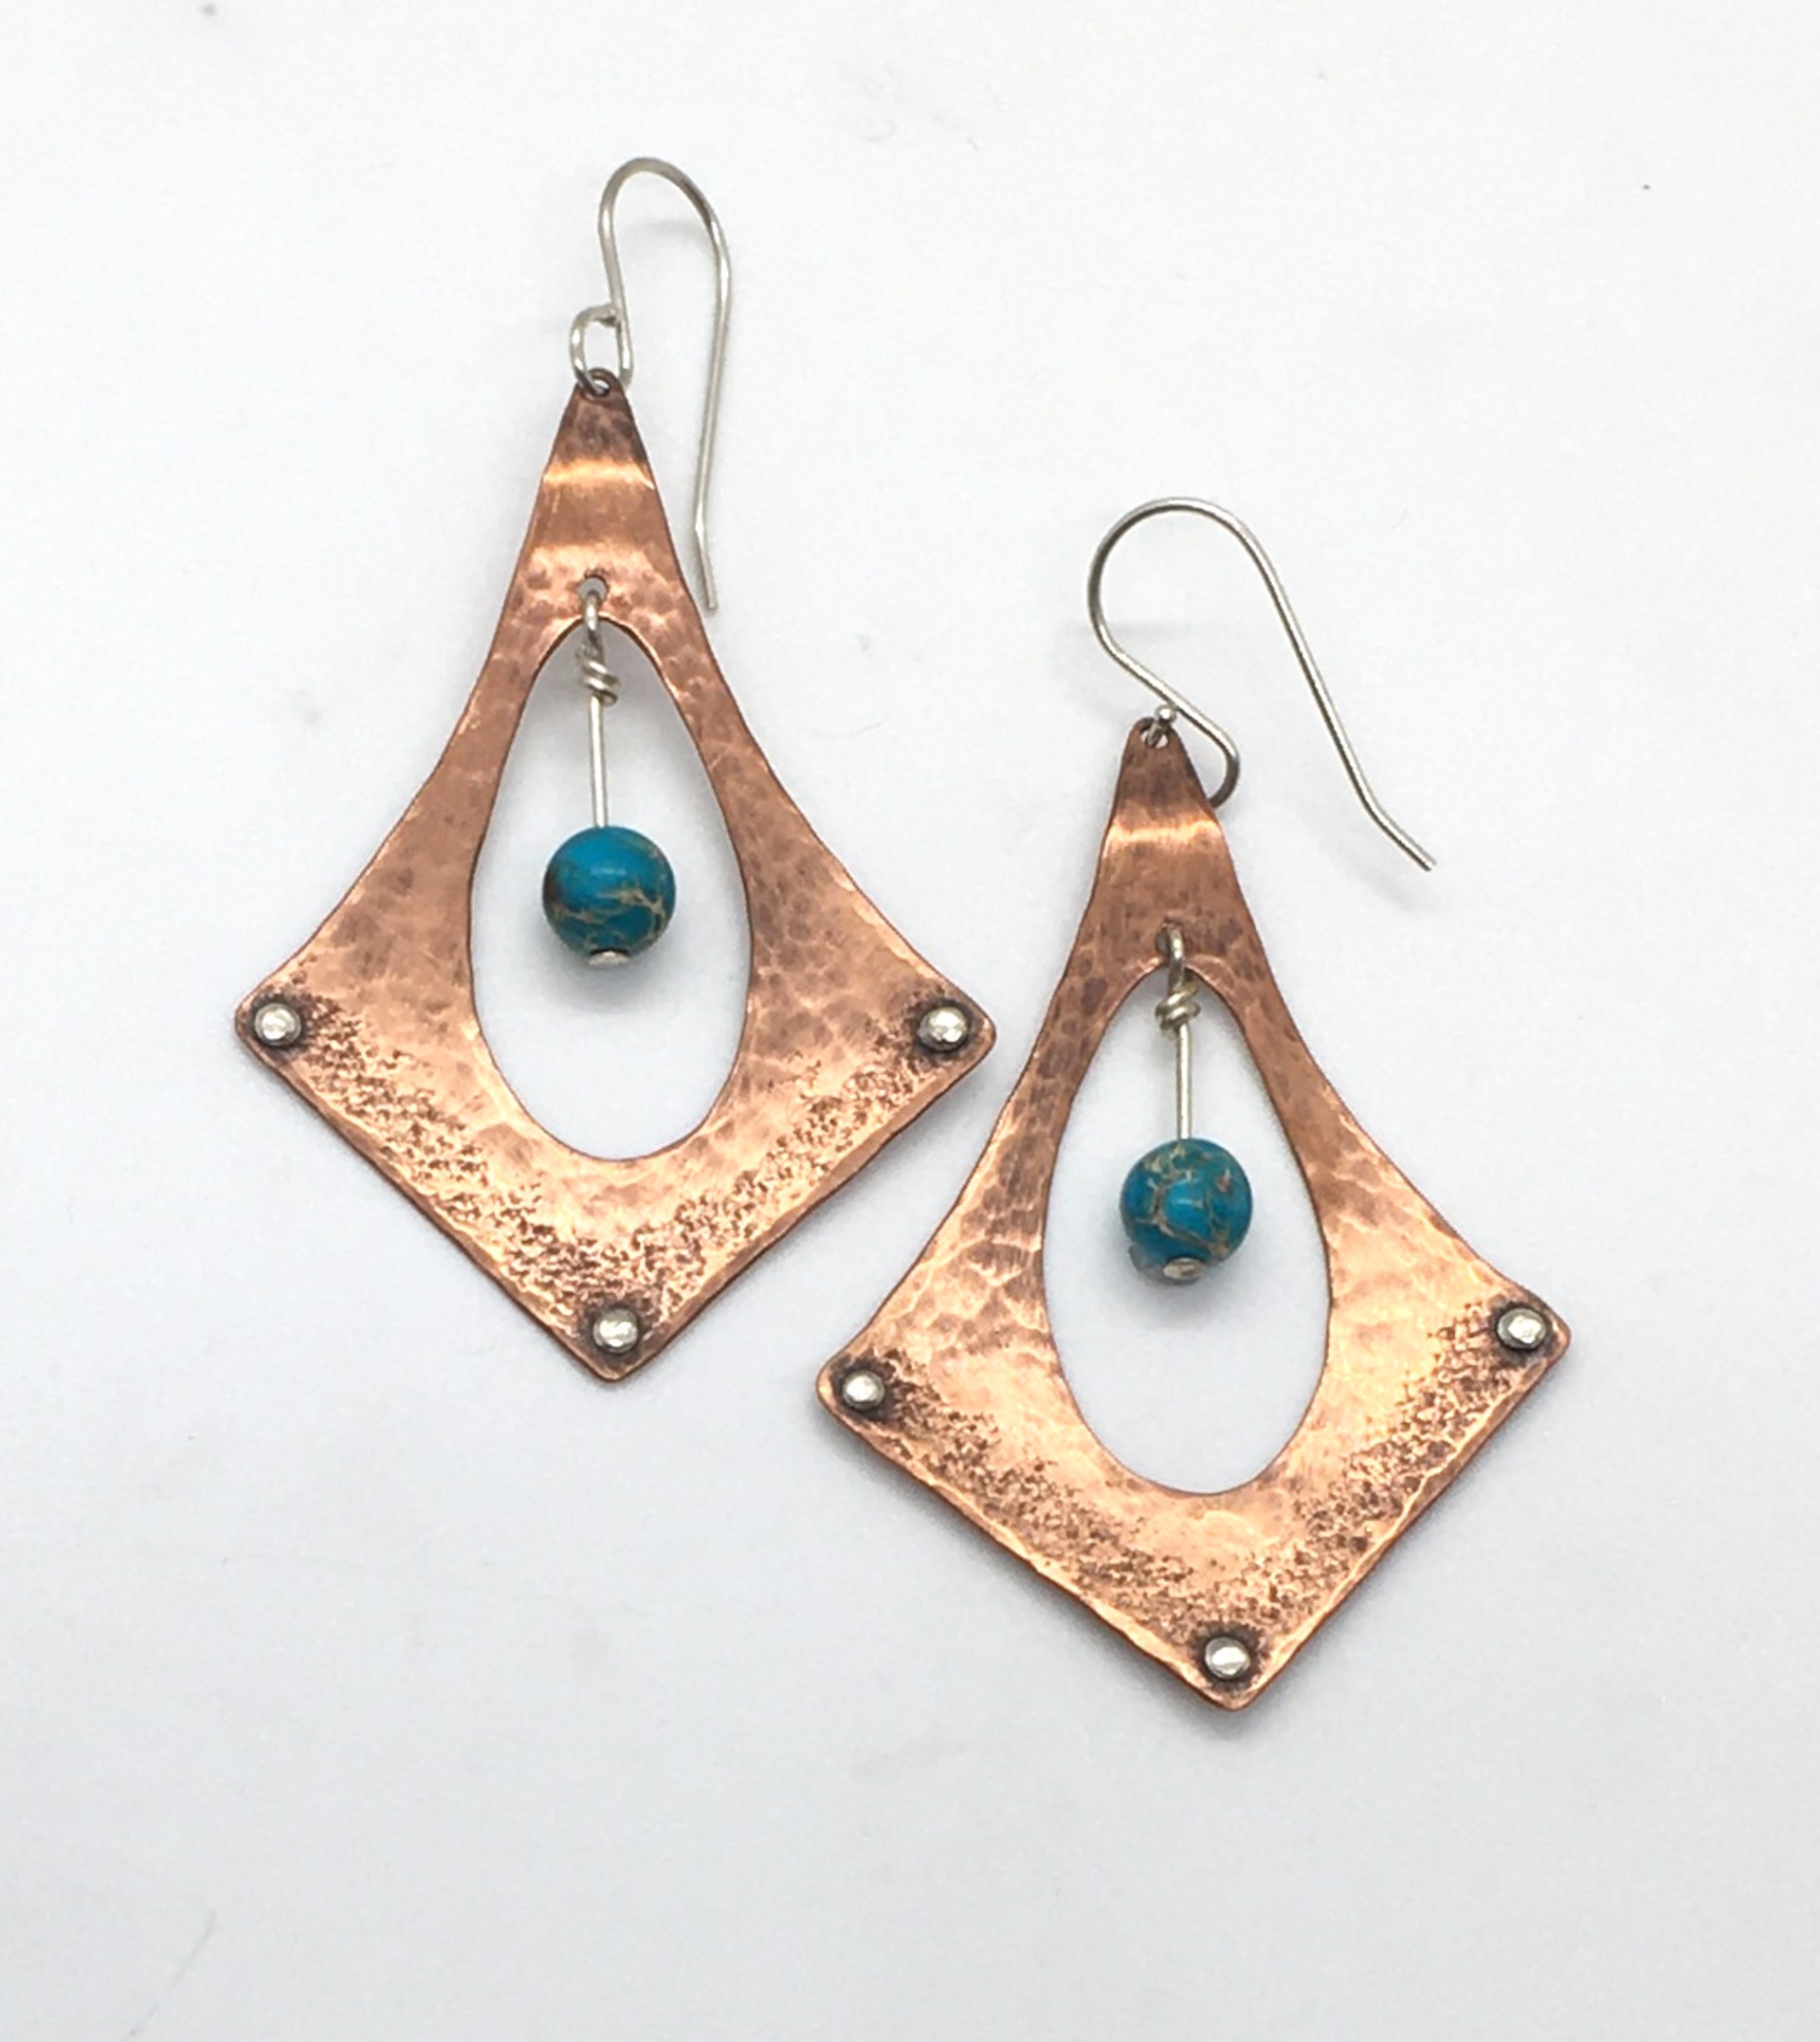 Handmade Riveted Copper and Aqua-Terra Jasper Earrings by Grace Ashford